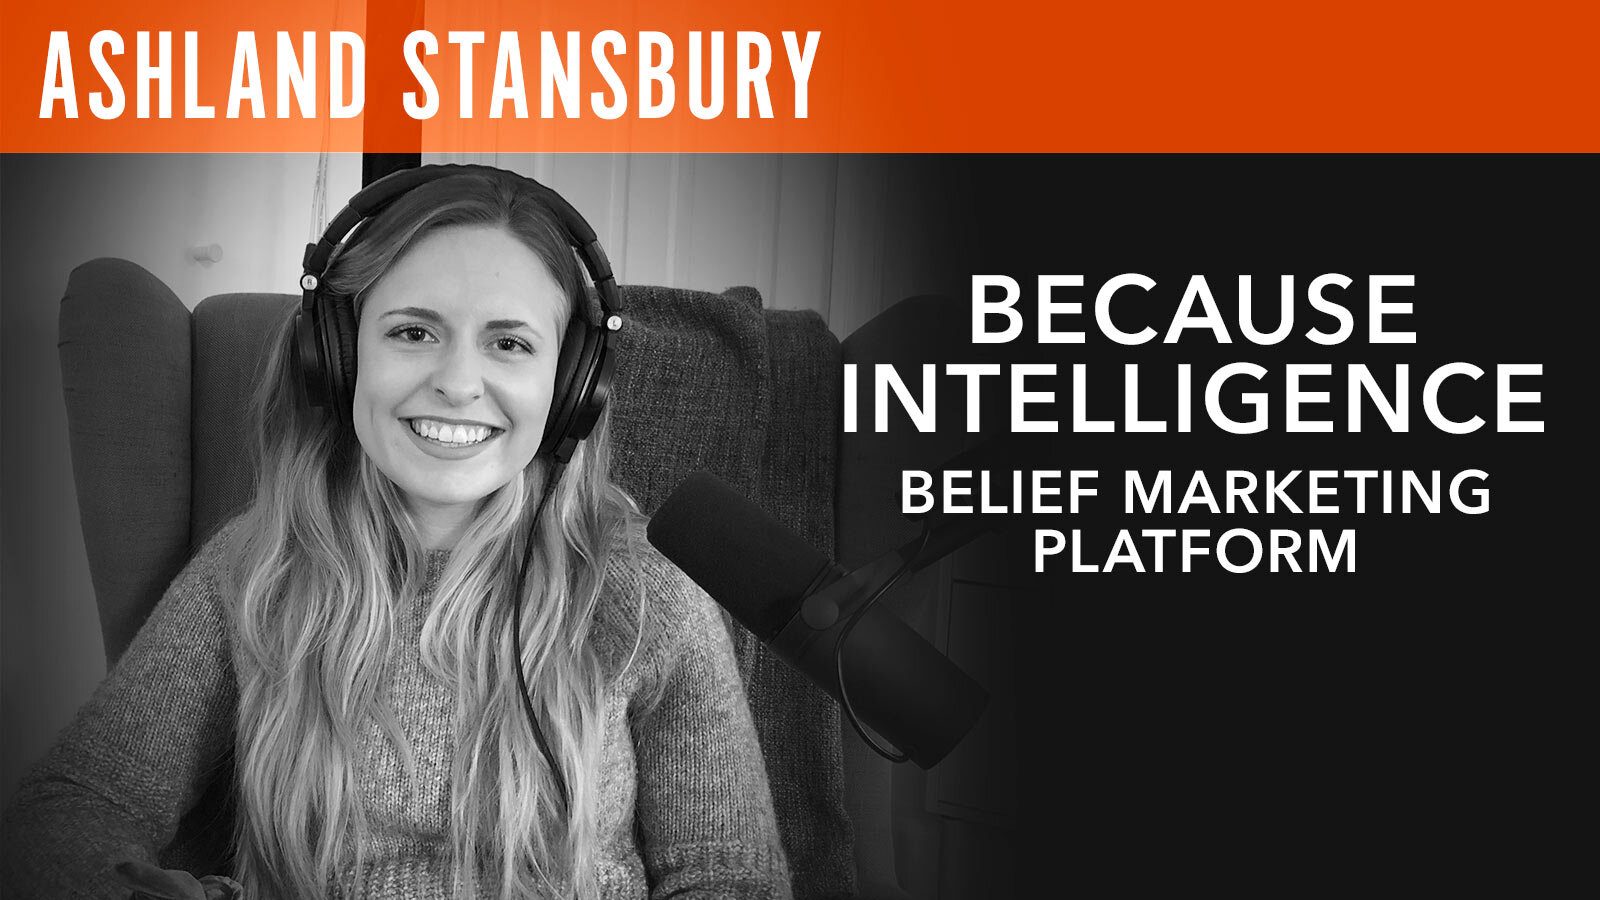 Ashland Stansbury "Because Intelligence: Belief Marketing Platform"